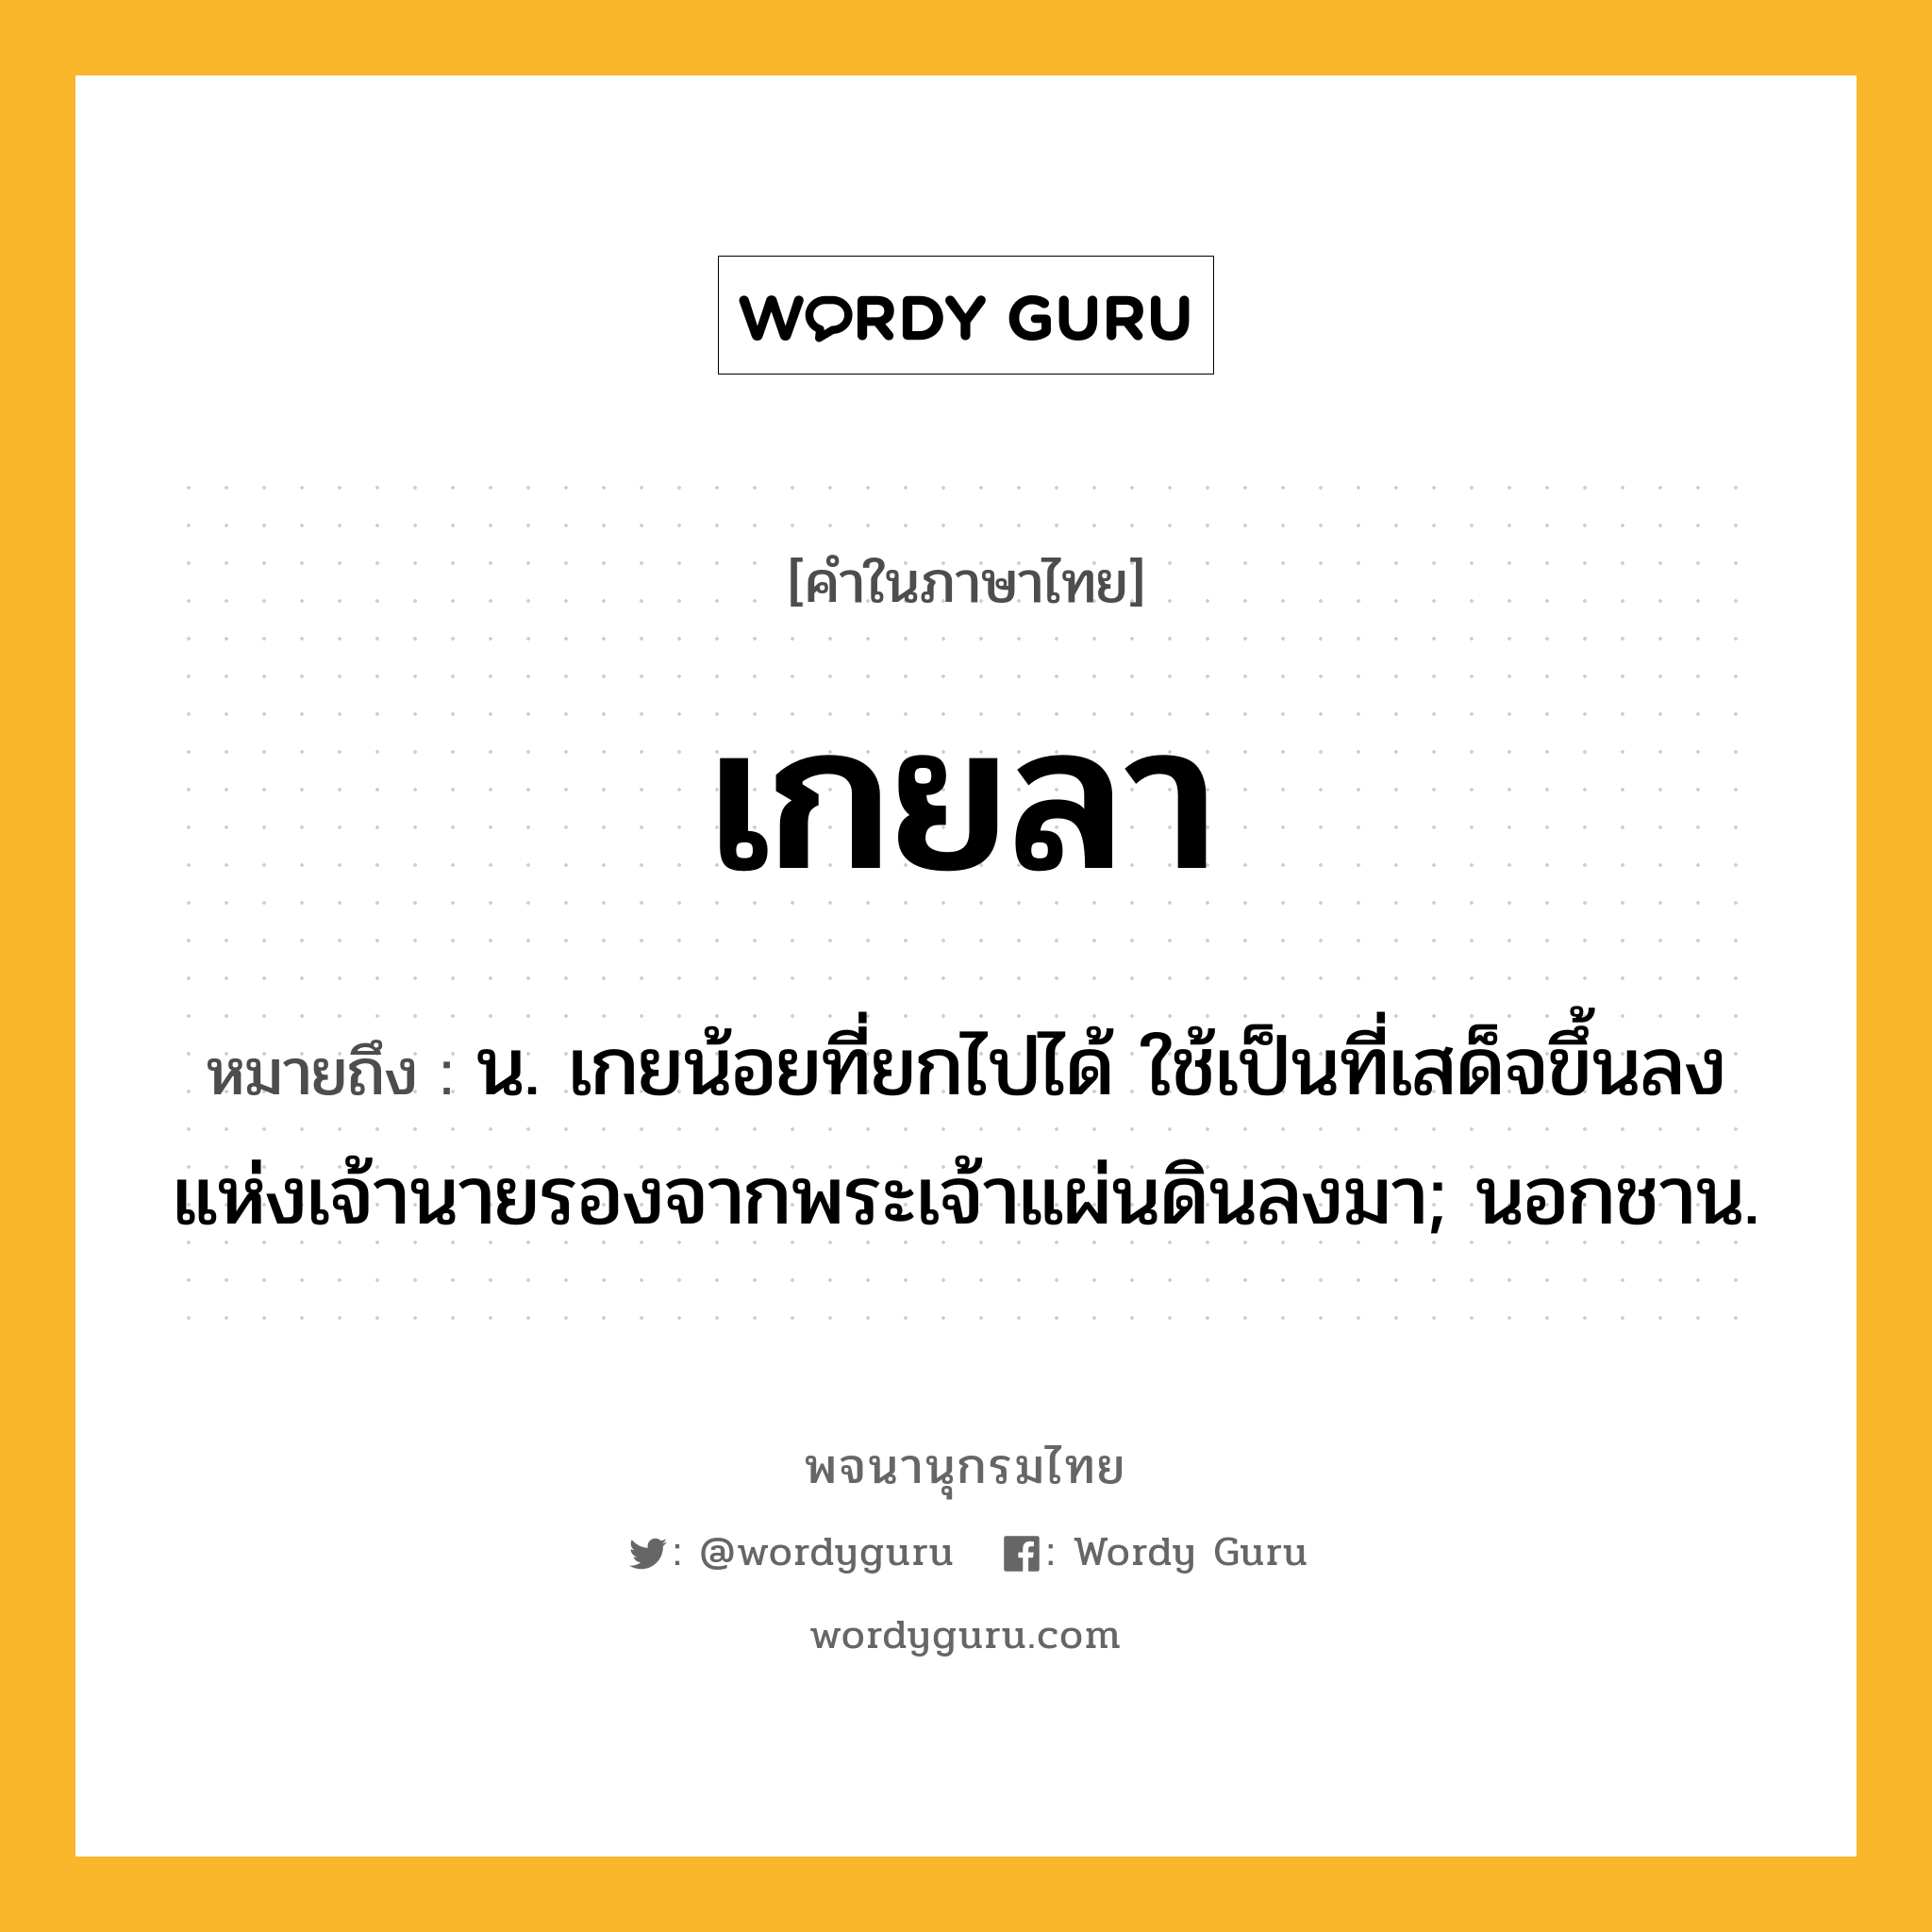 เกยลา ความหมาย หมายถึงอะไร?, คำในภาษาไทย เกยลา หมายถึง น. เกยน้อยที่ยกไปได้ ใช้เป็นที่เสด็จขึ้นลงแห่งเจ้านายรองจากพระเจ้าแผ่นดินลงมา; นอกชาน.